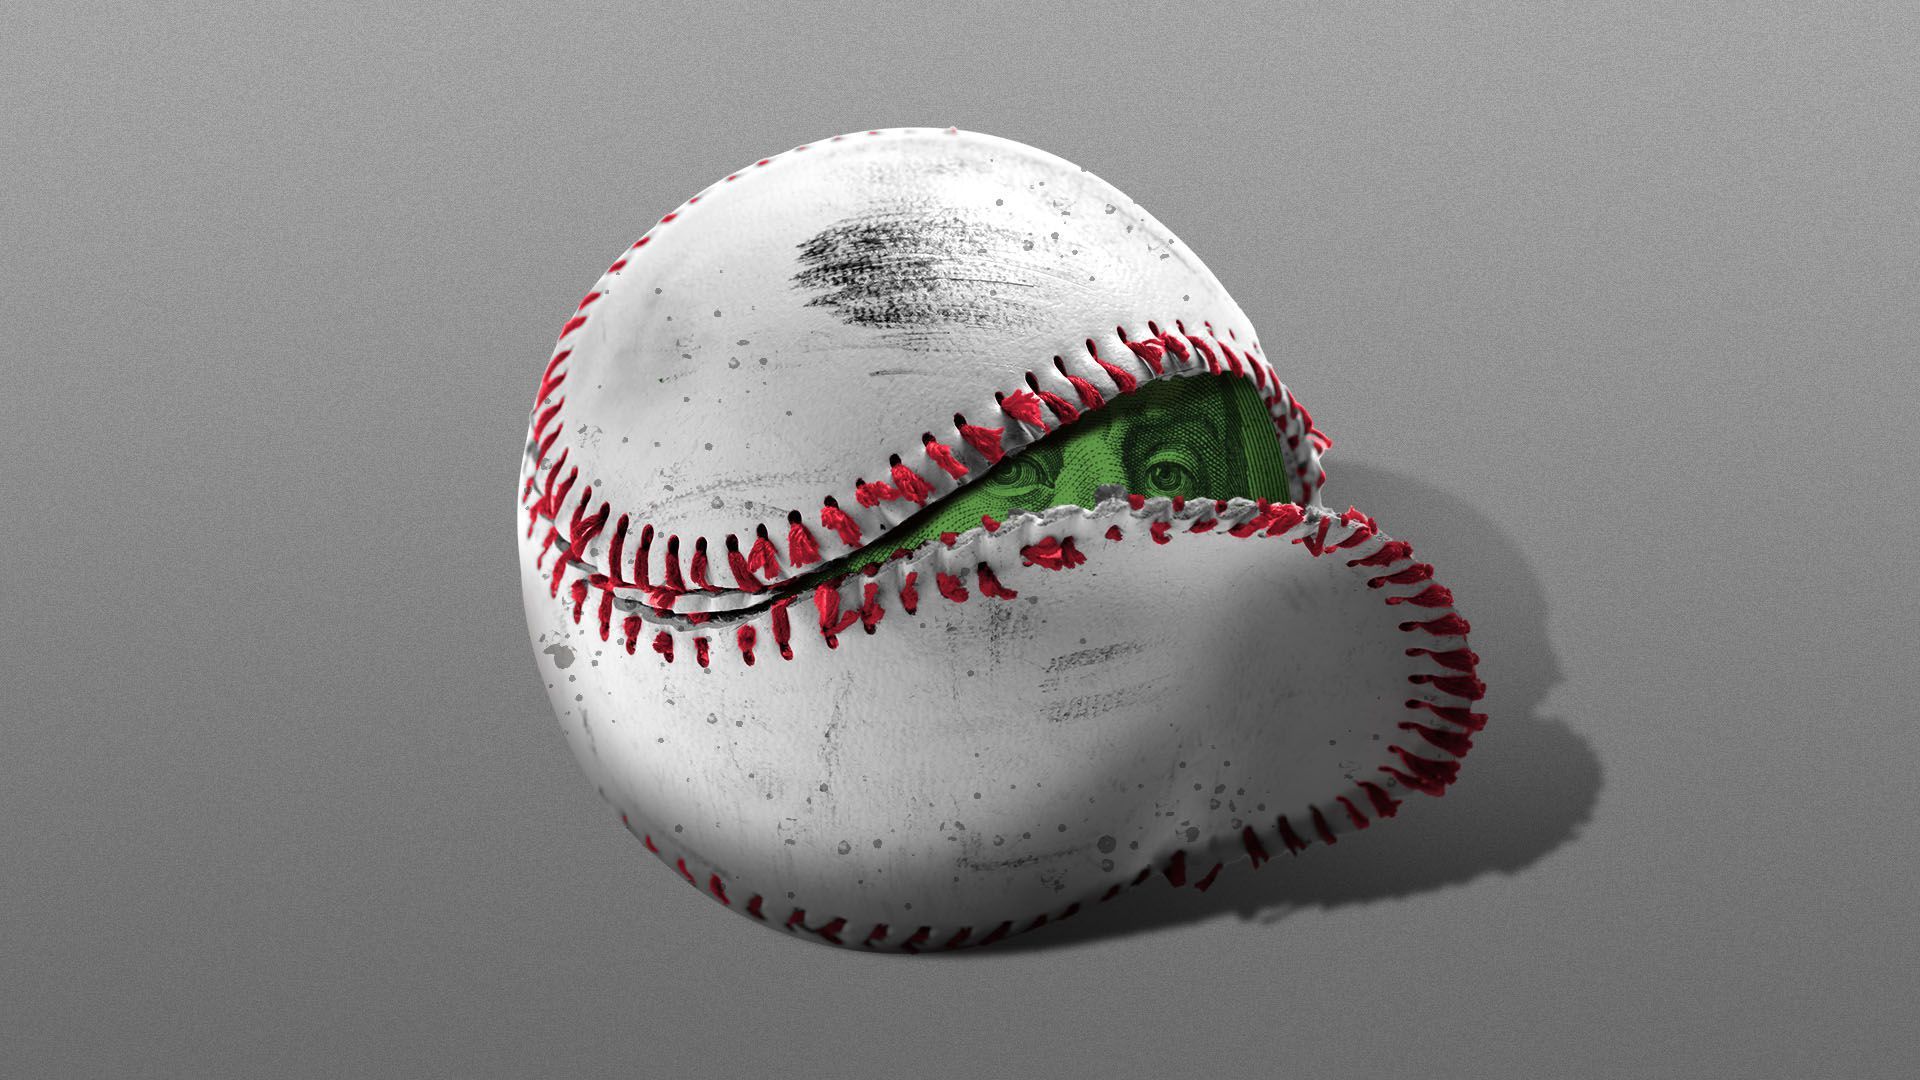 Illustration of a baseball with a broken seam exposing a $100 bill.